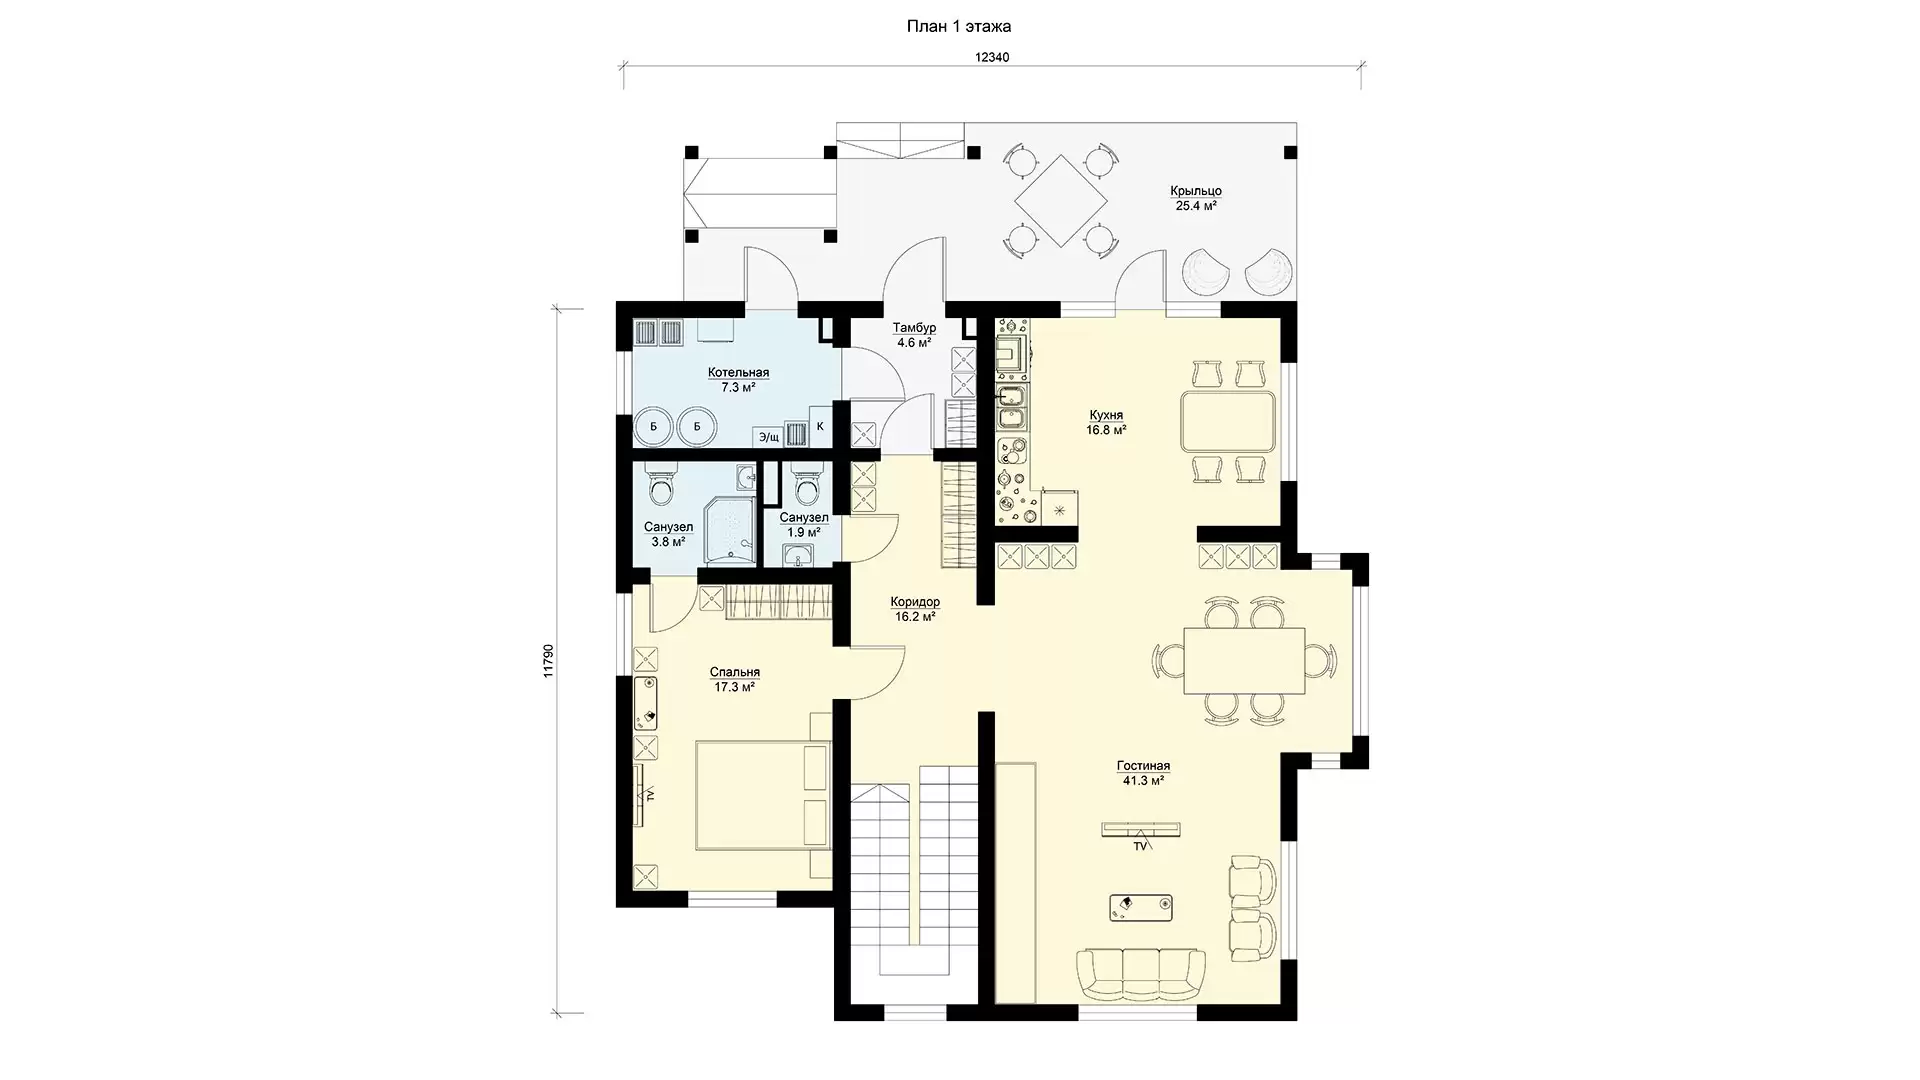 Планировка первого этажа двухэтажный дом 12 на 12 с эркером, проект МС-246